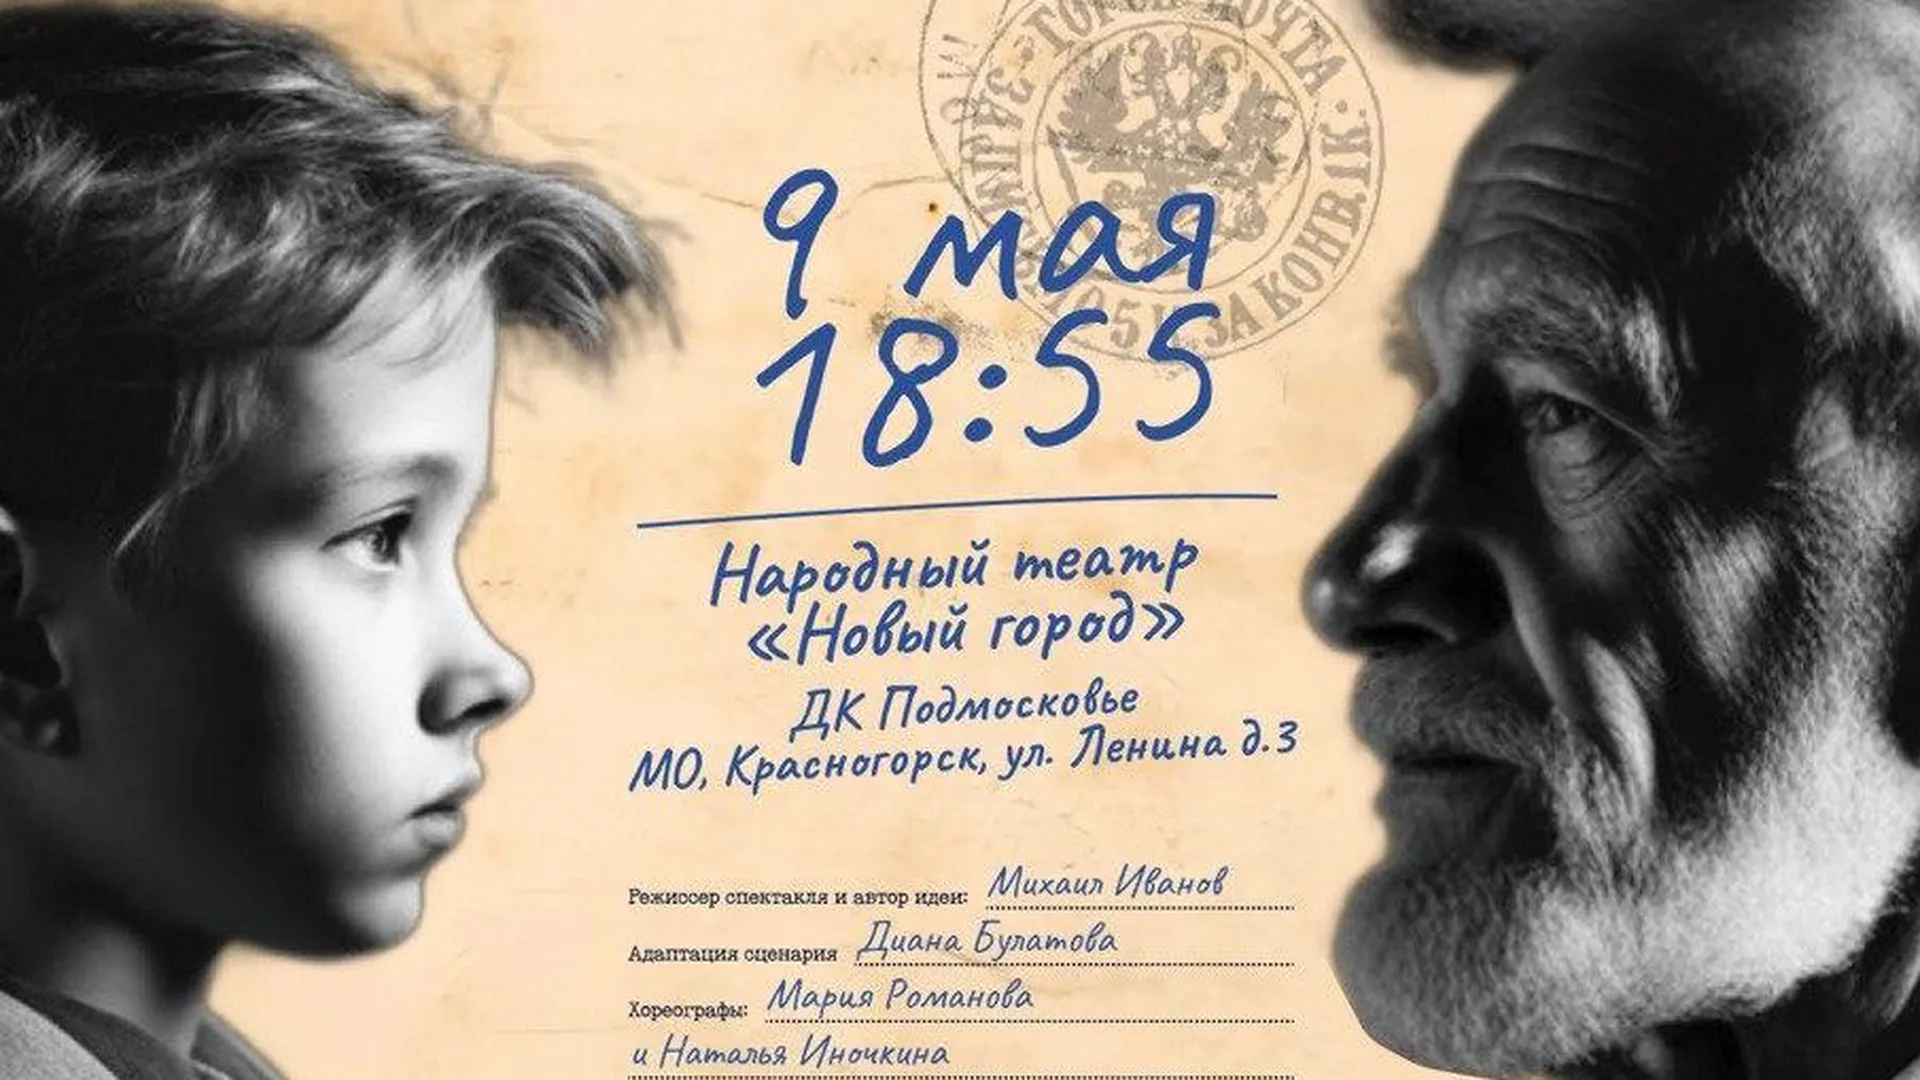 Показ спектакля «Судьба человека. Первая весна» пройдет 9 мая в Красногорске